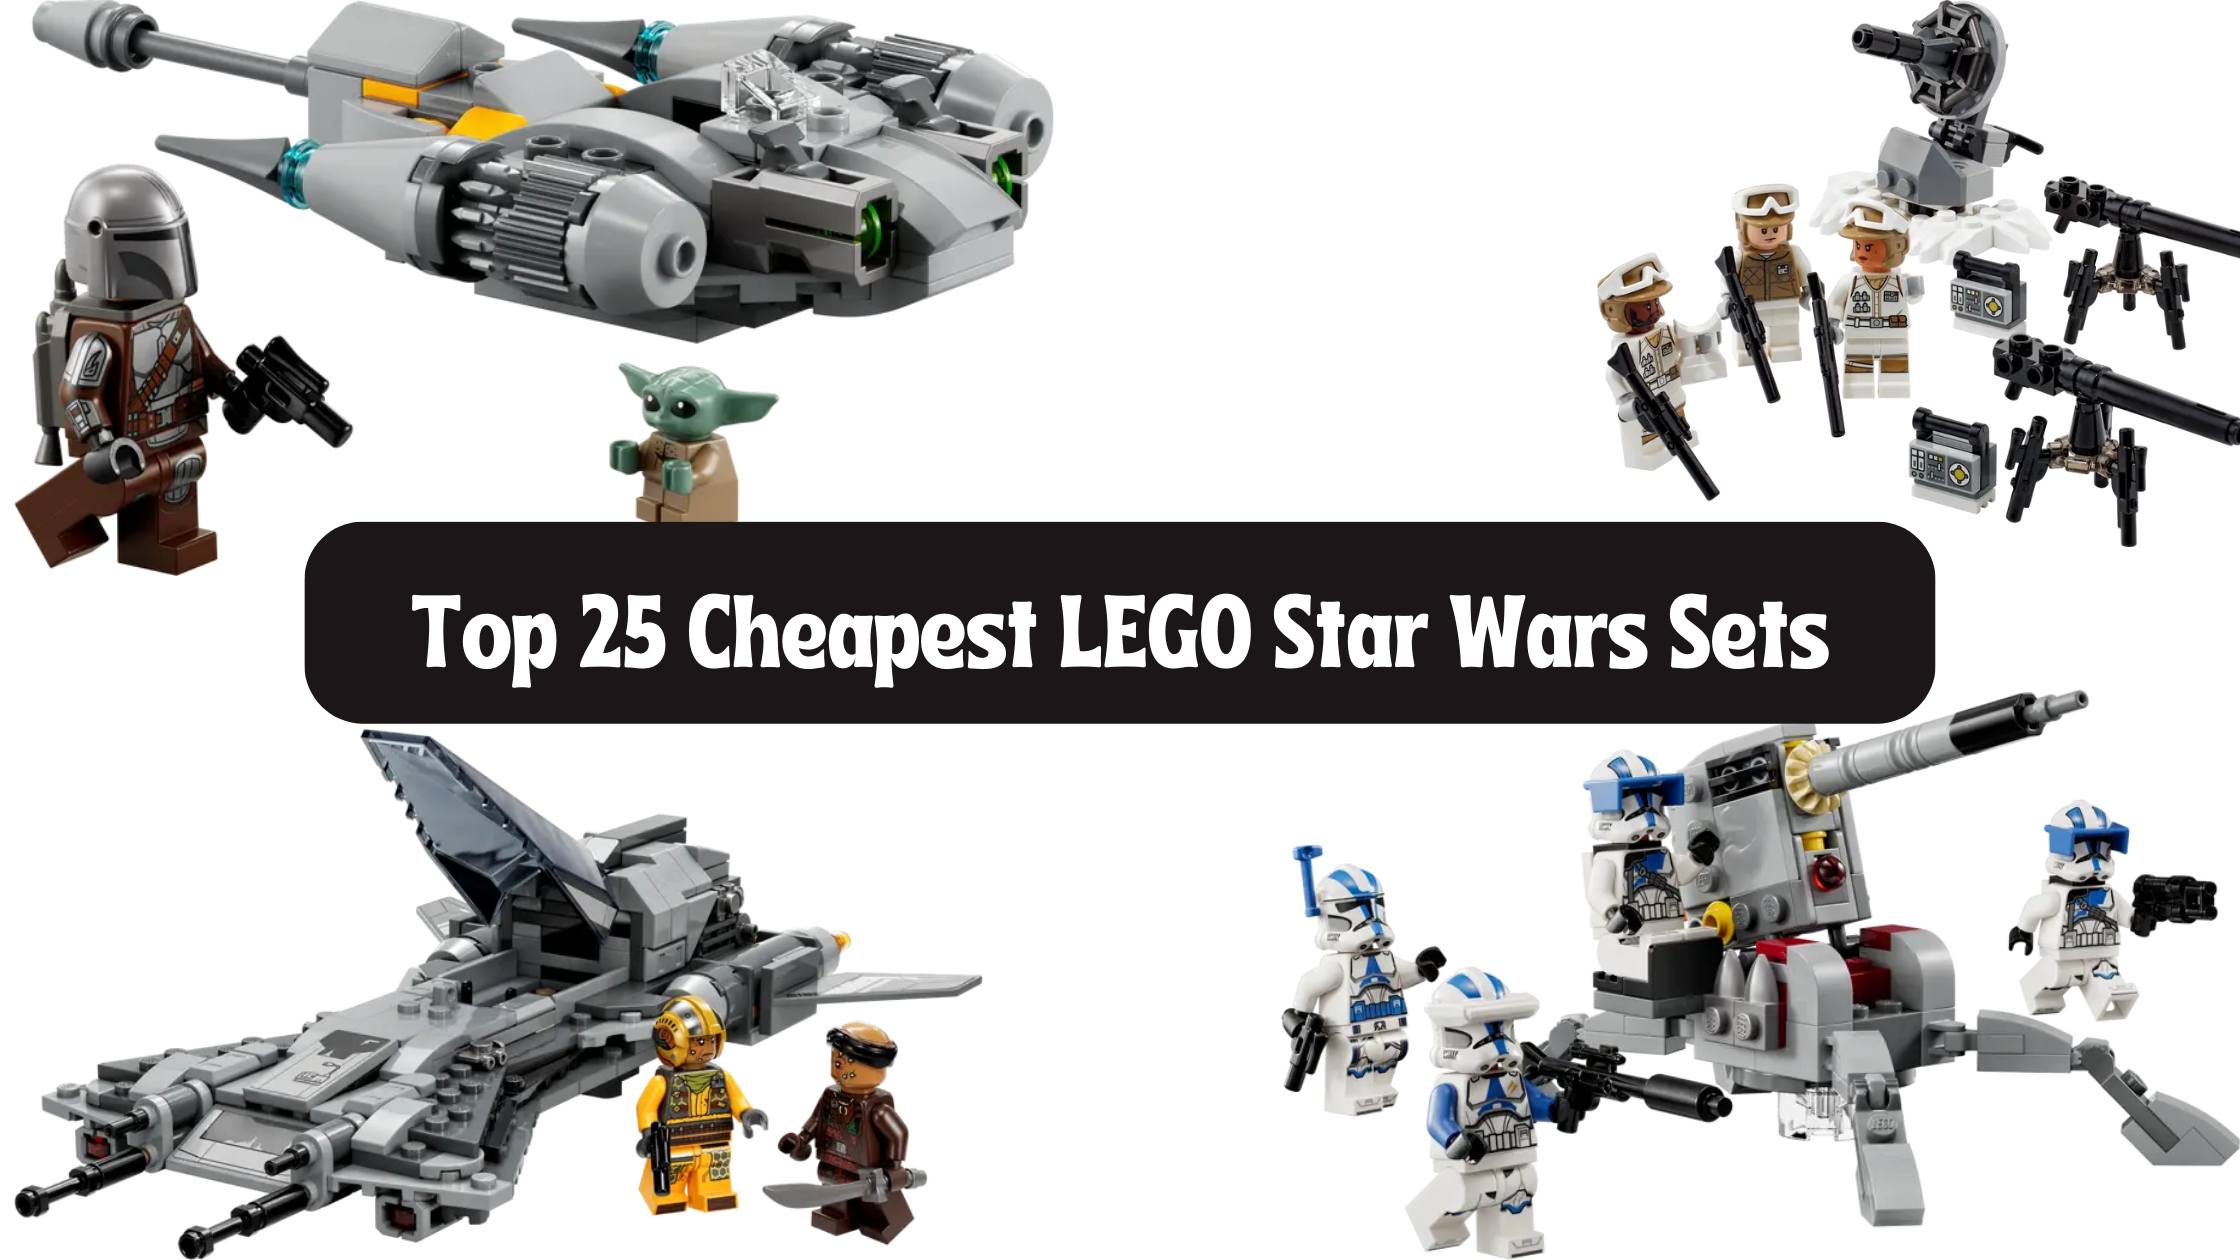 Janice Kompatibel med dvs. Top 25 Cheapest LEGO Star Wars Sets (Ranked) 2023